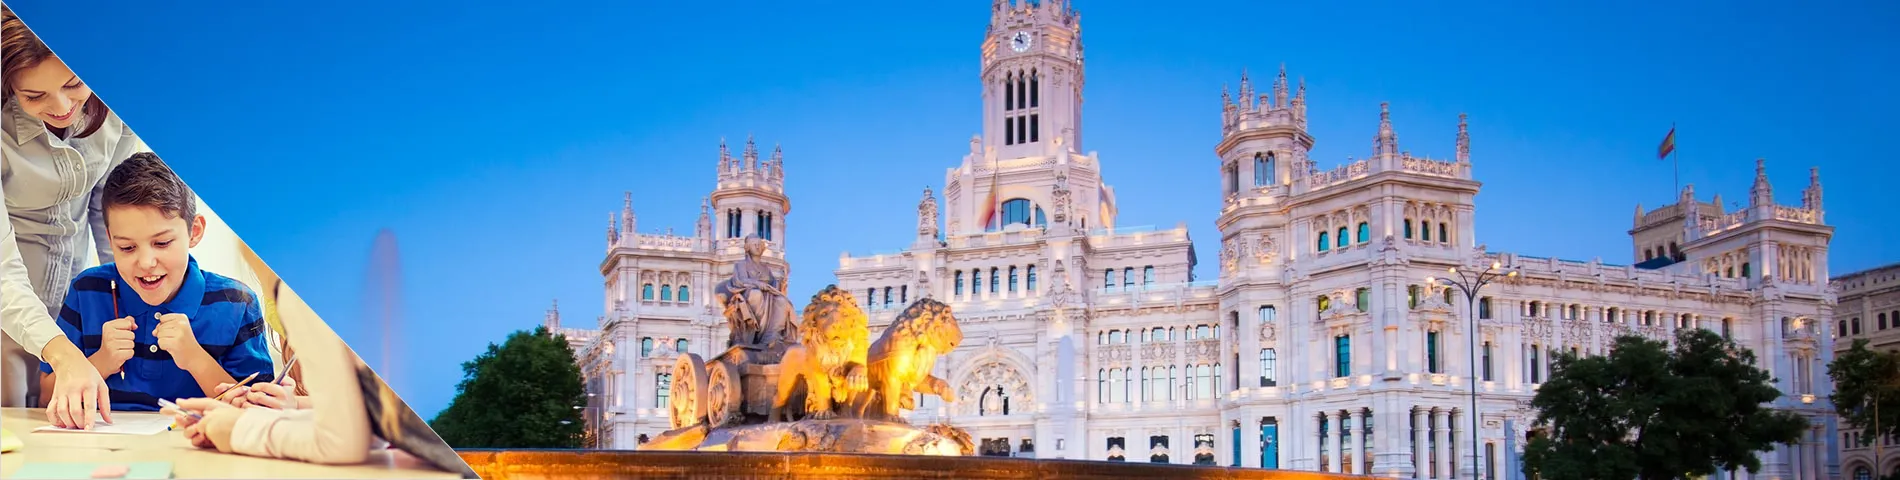 Мадрид - Испанский для Учителей